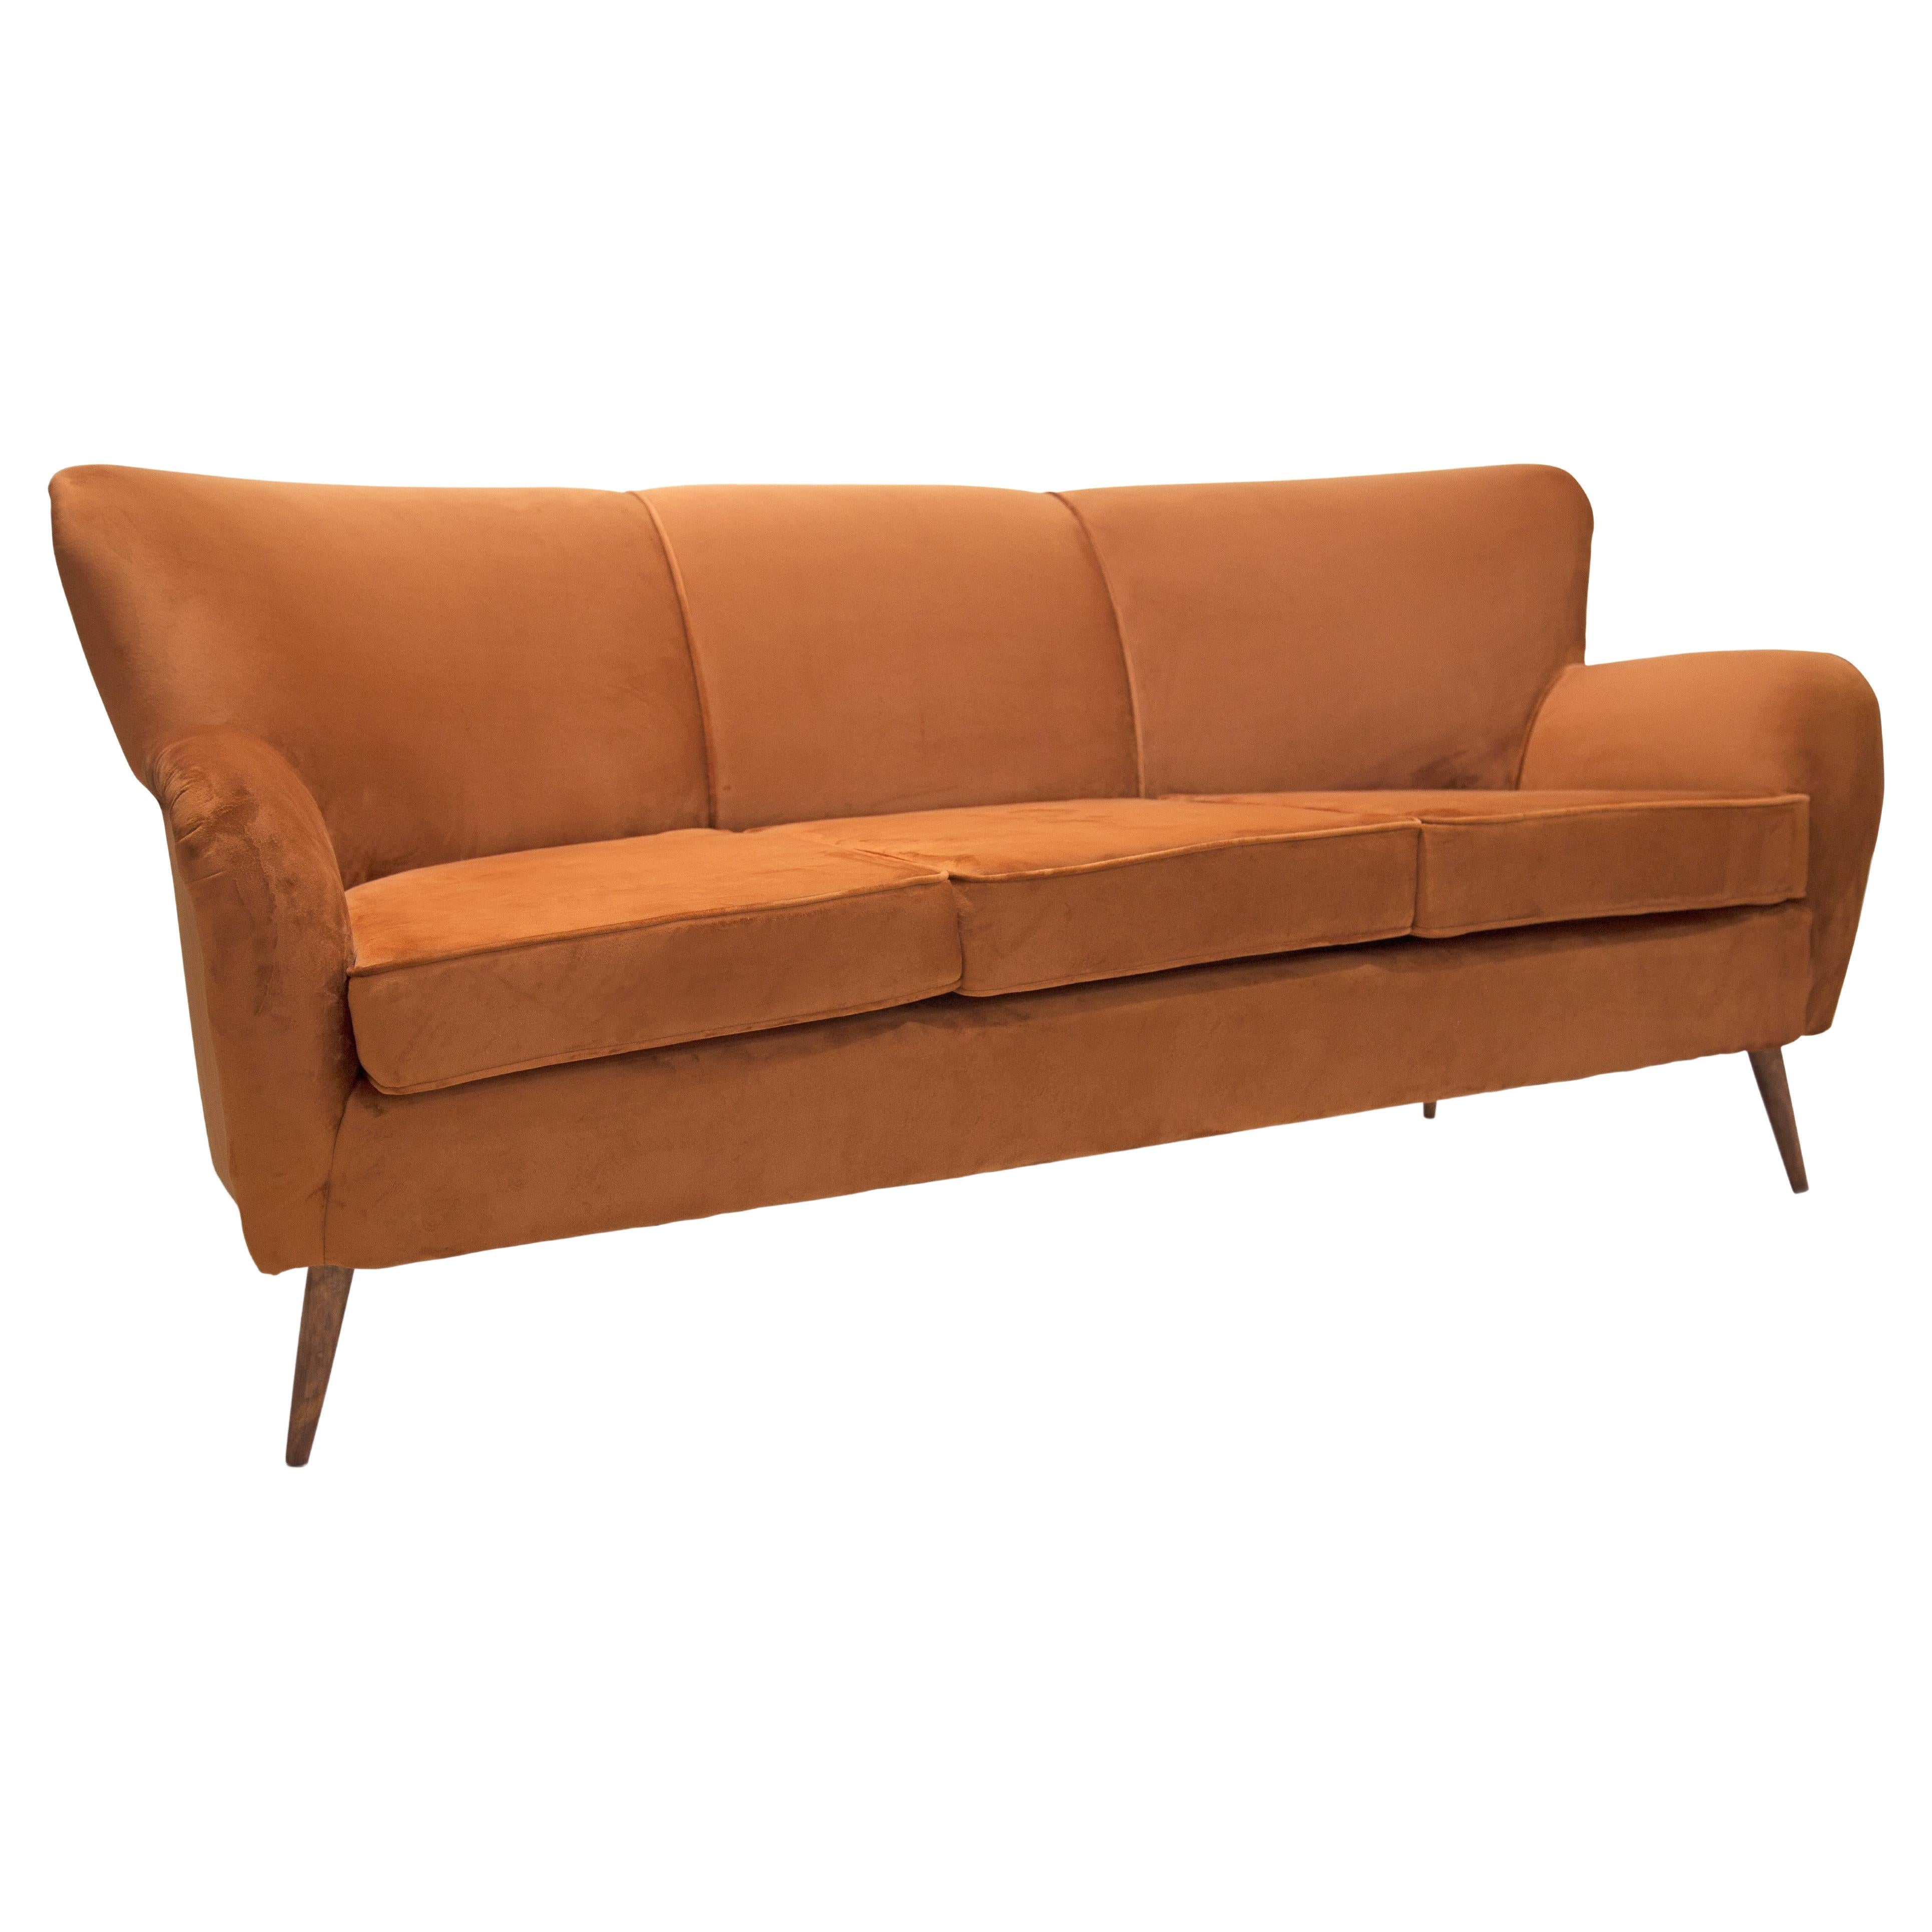 Disponible dès à présent, ce canapé moderne du milieu du siècle a une structure en bois dur avec du velours Ochre retapissé. Le canapé est doté d'un dossier haut et d'accoudoirs confortables, ce qui le rend non seulement beau, mais aussi confortable